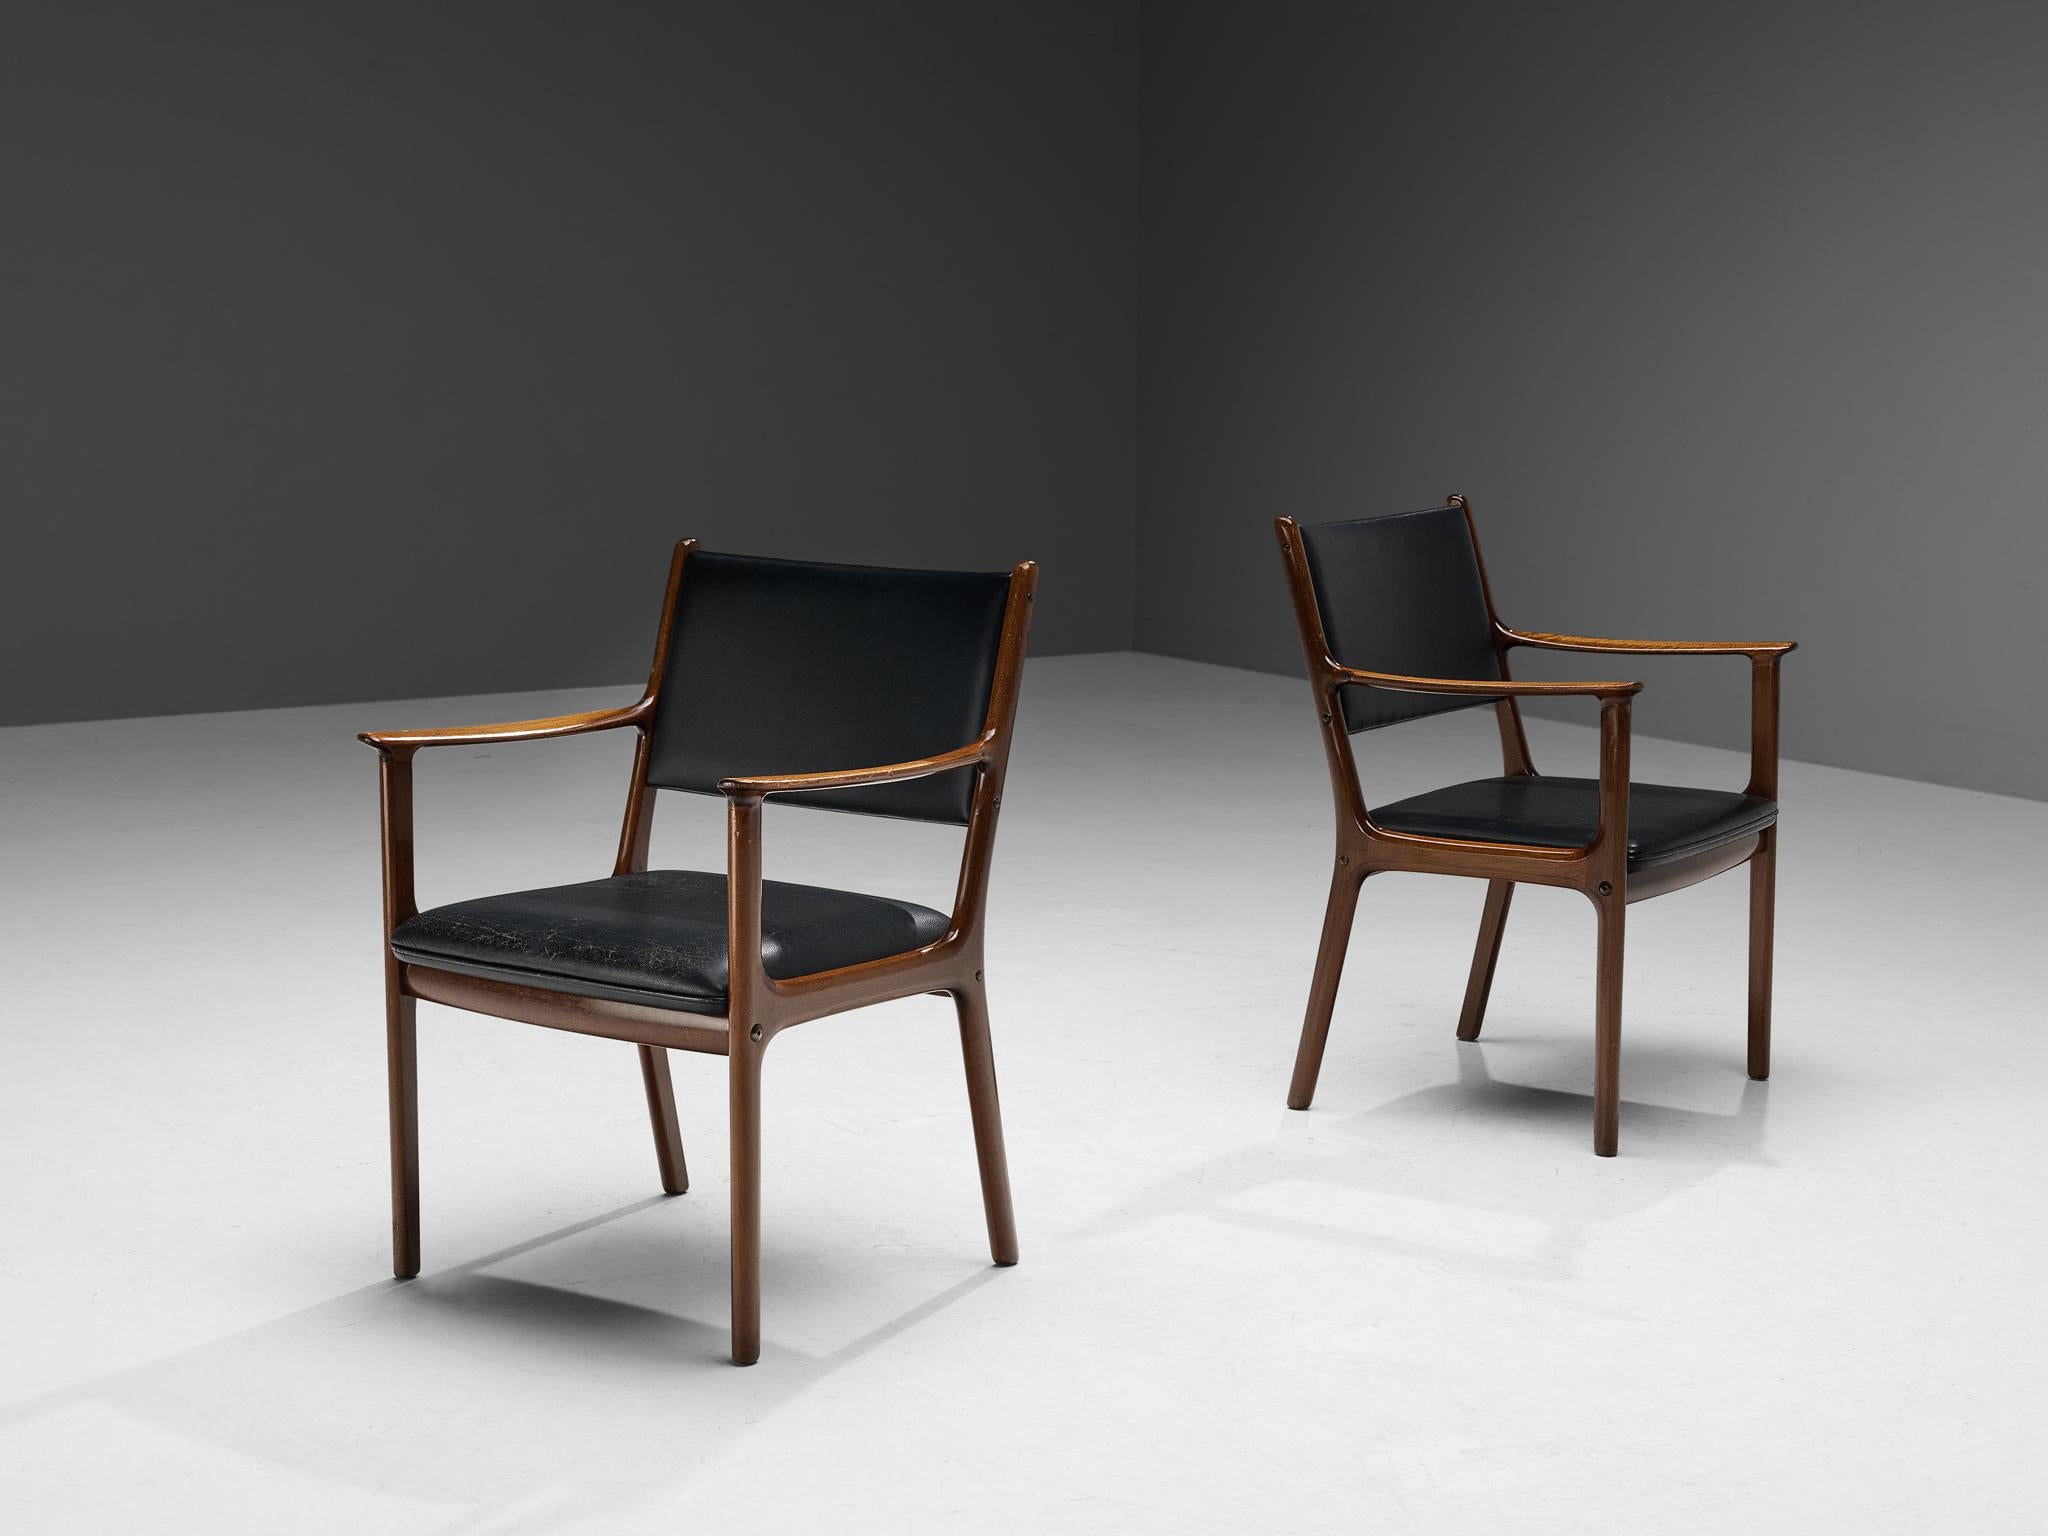 Ole Wanscher für P. Jeppesens Møbelfabrik, Sessel, Modell 'PJ412', Teakholz, Leder, Dänemark, 1960er Jahre 

Bescheidenes Paar Esszimmerstühle, entworfen von Ole Wanscher in den 1960er Jahren. Diese Stühle sind dank der bemerkenswert breiten Sitze